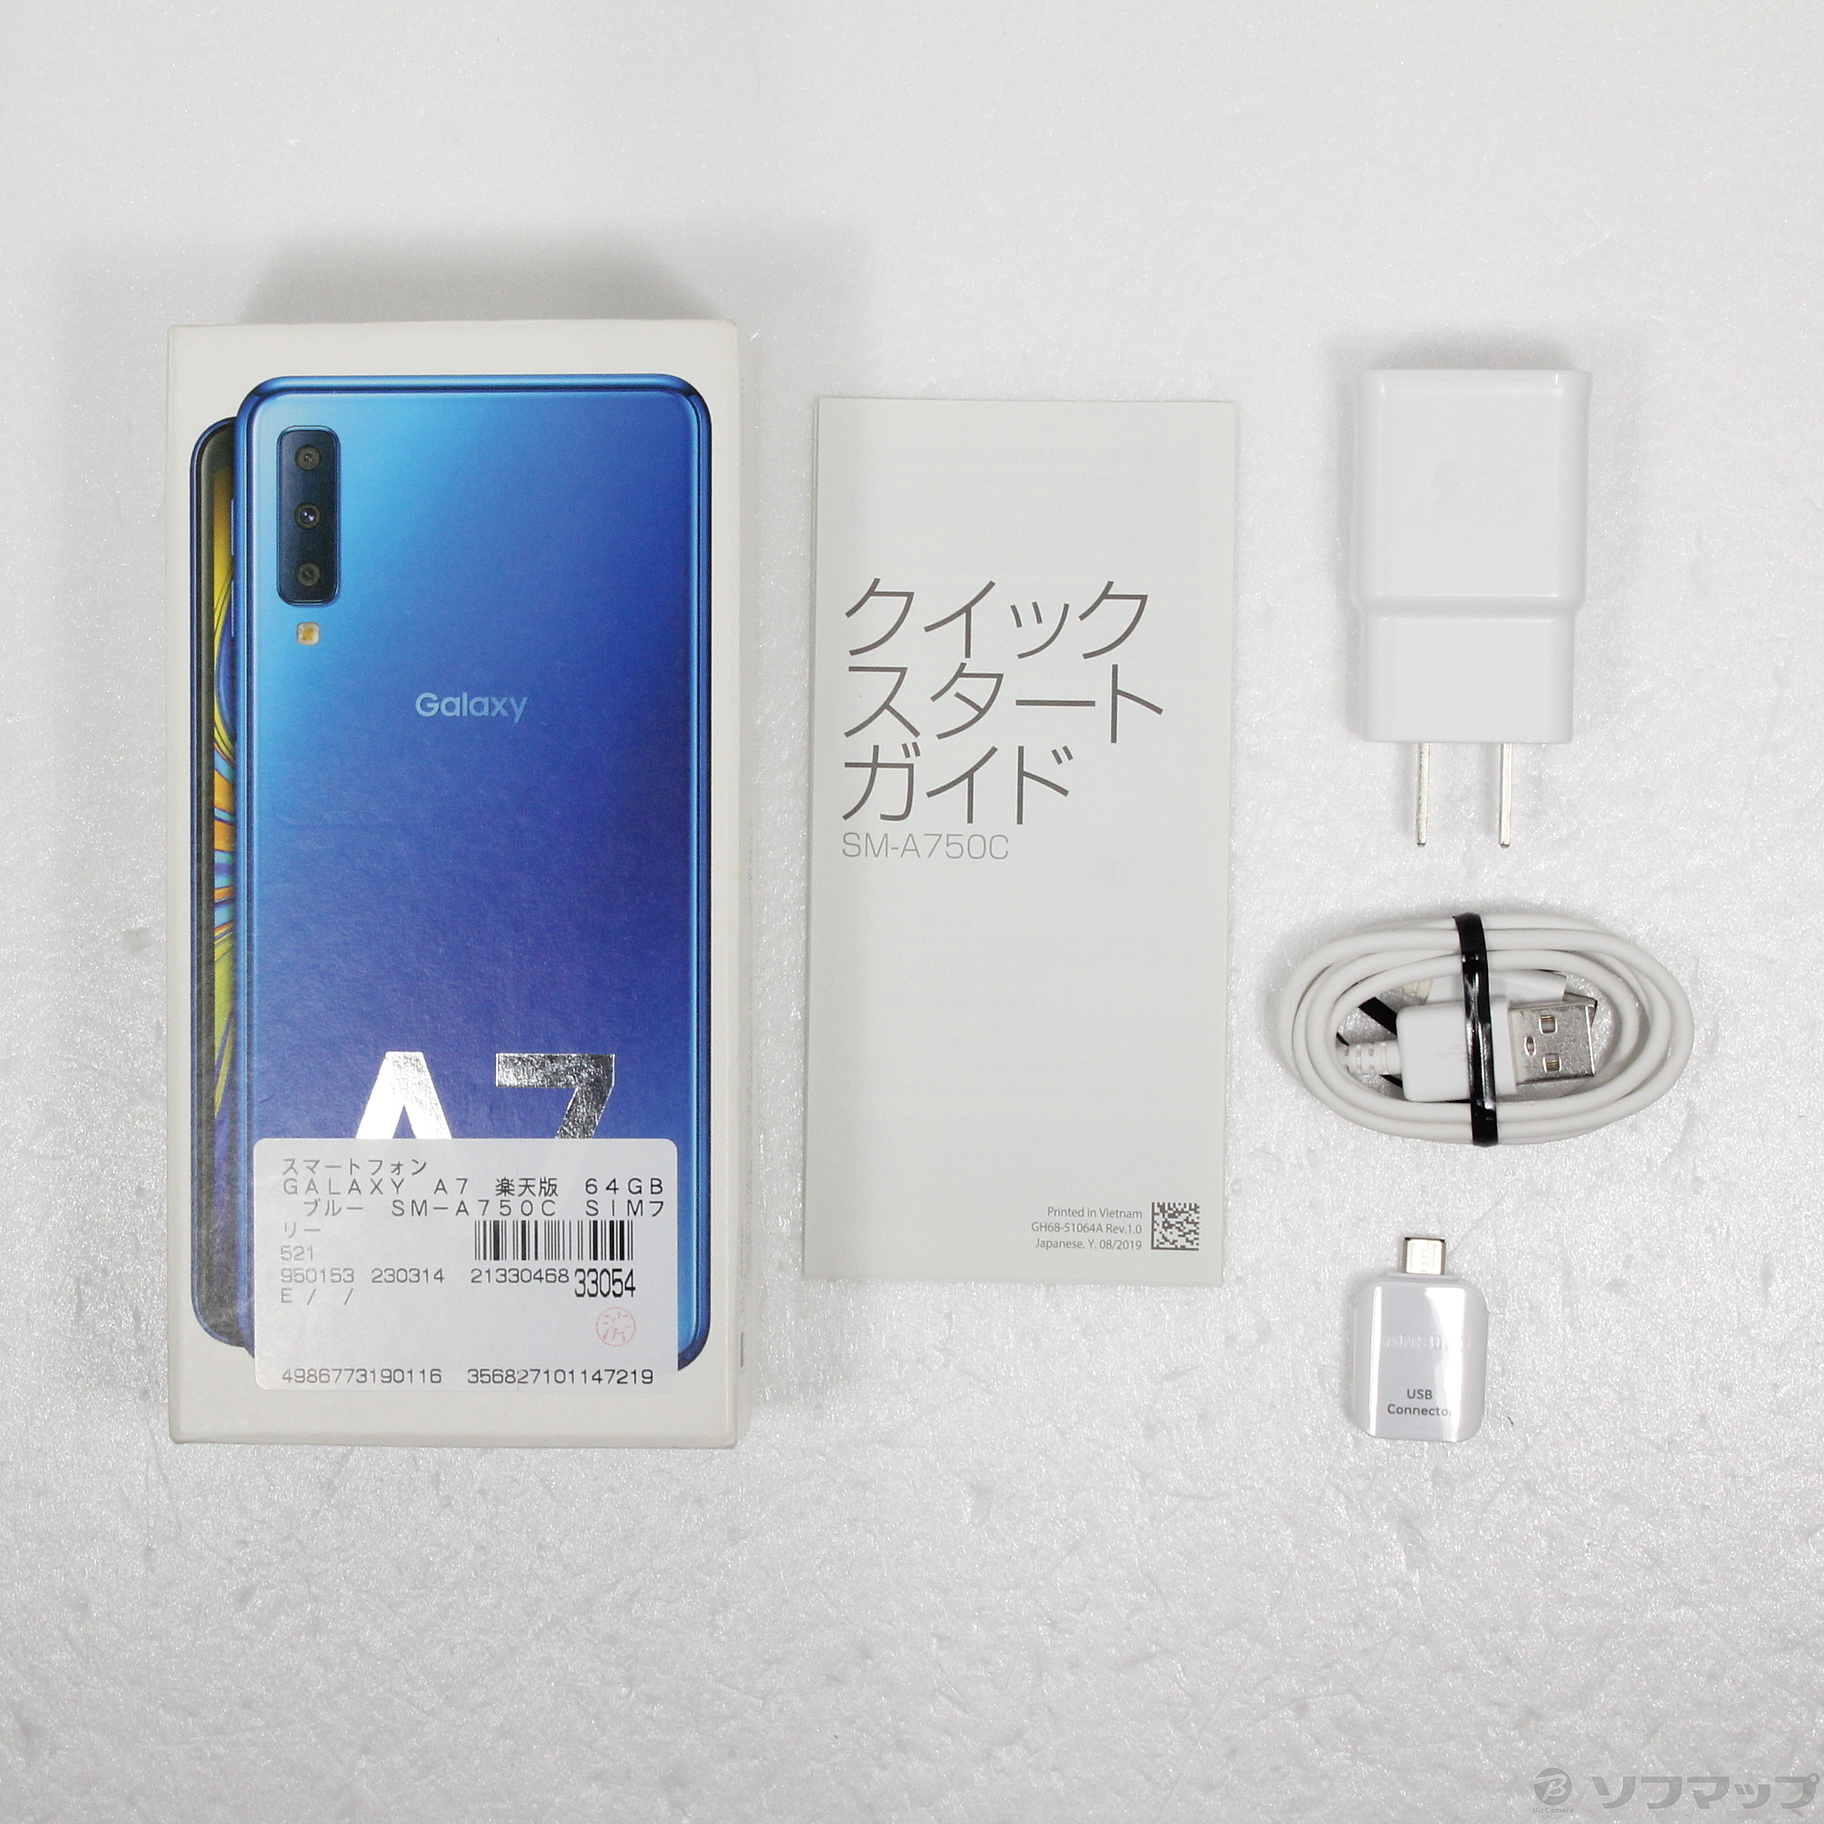 Galaxy A7 ブルー 64 GB SIMフリースマホ/家電/カメラ 